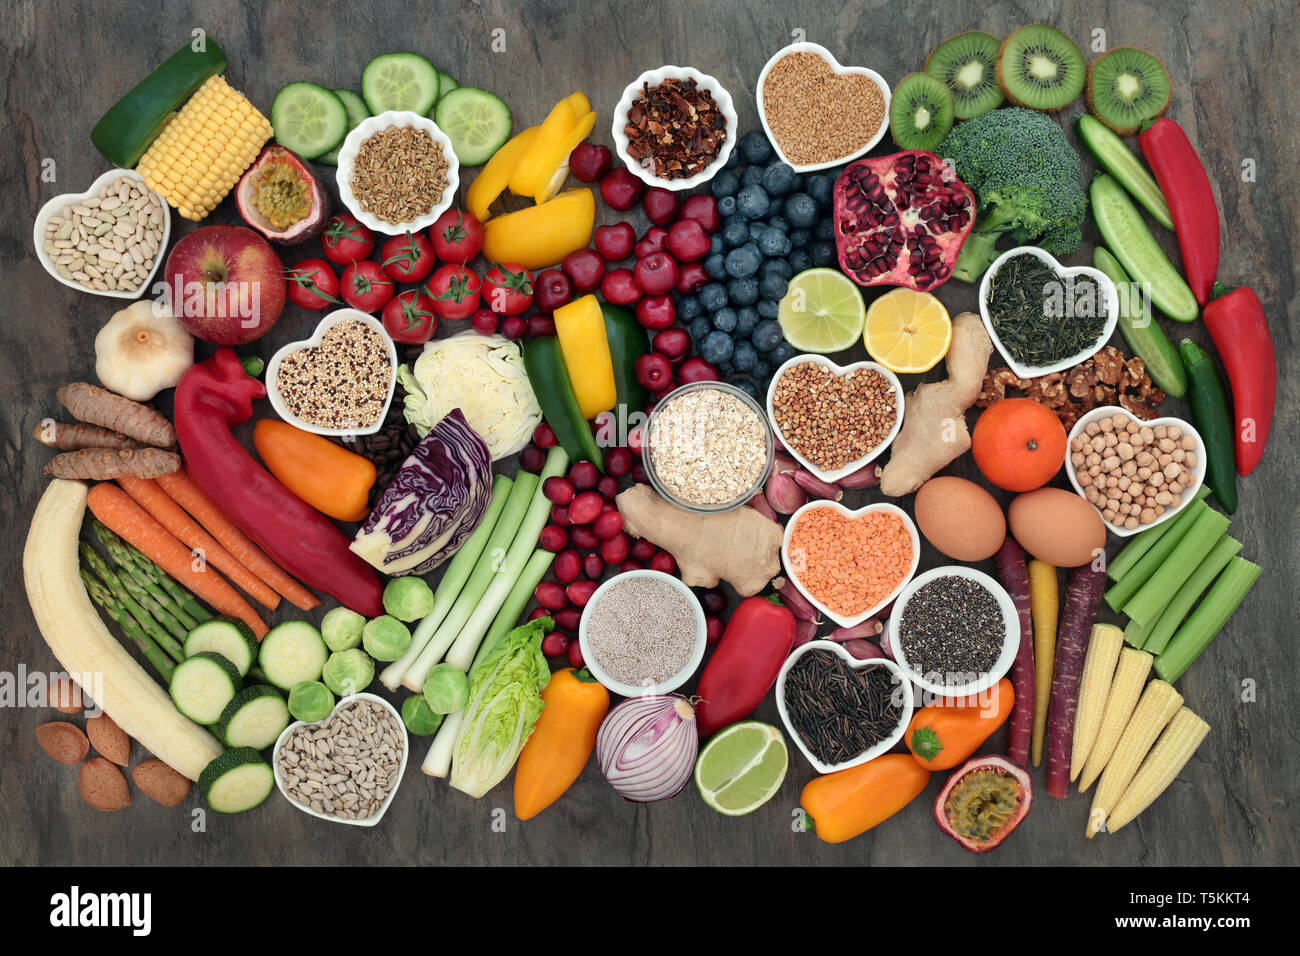 Gesunde Wahl mit super Essen von frischem Obst, Gemüse, Samen, Hülsenfrüchte, Getreide, Körner, Nüsse, Kräuter und Gewürze. Stockfoto